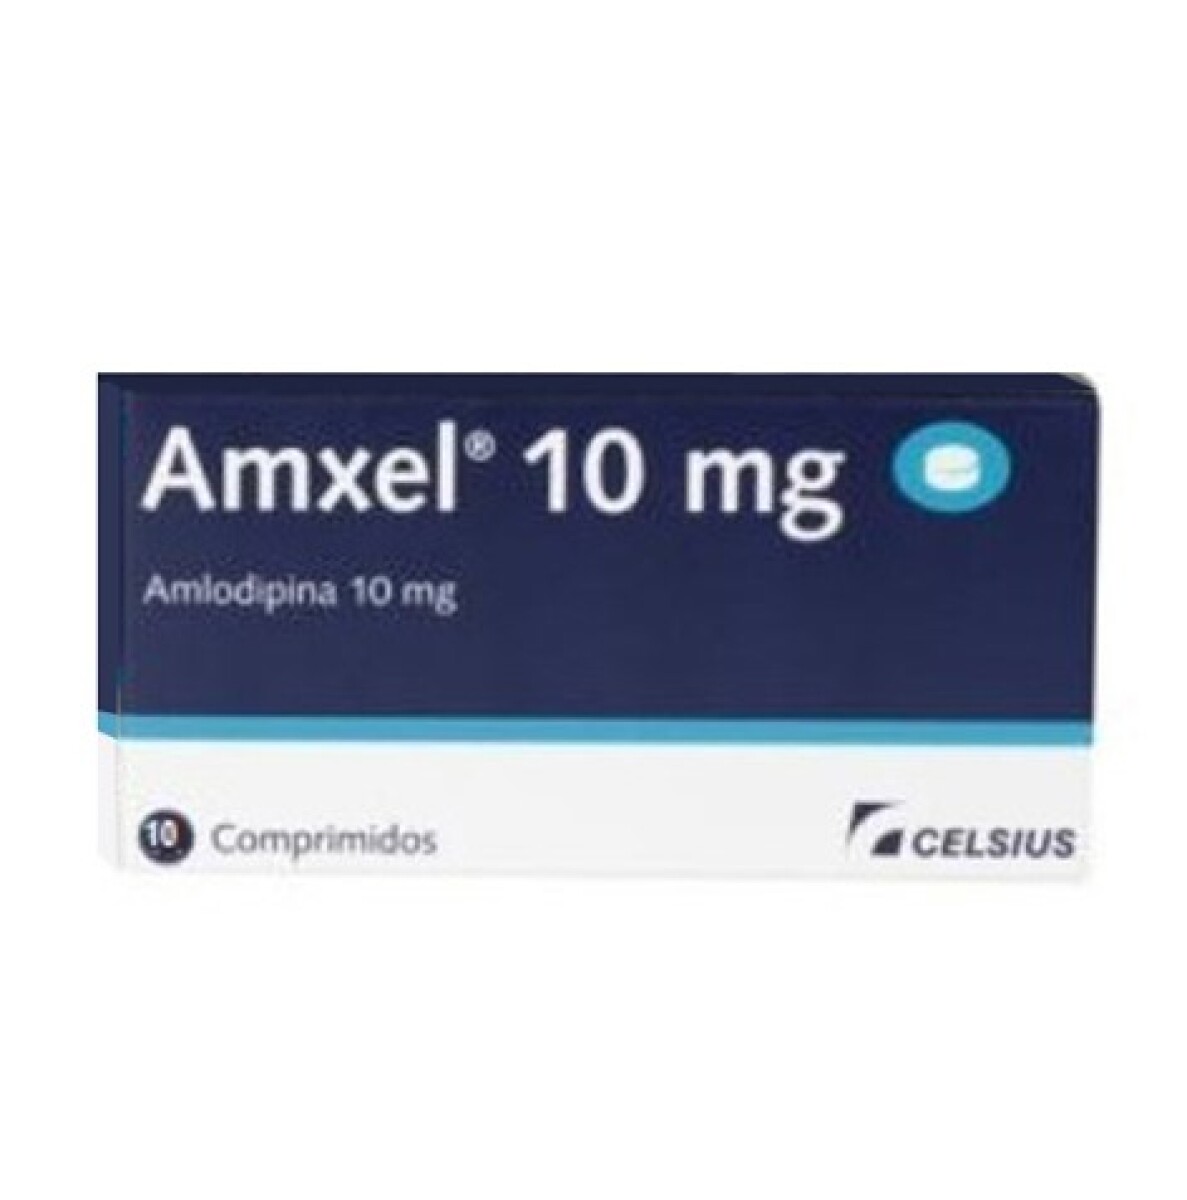 Amxel 10mg x 10 COM 